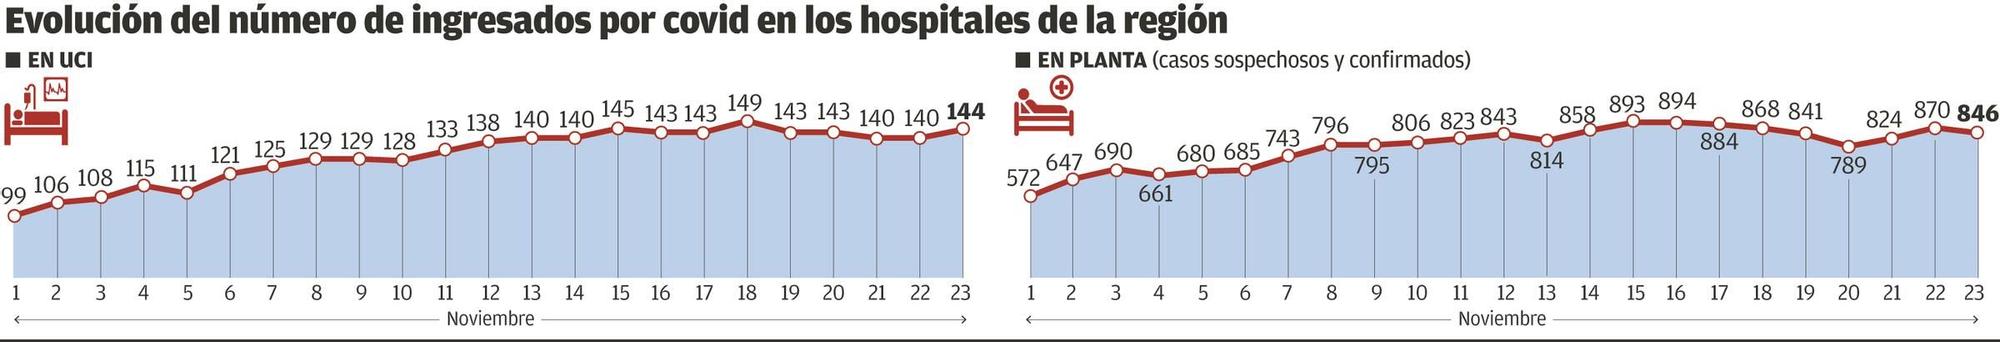 Evolución del número de ingresados por covid en hospitales asturianos.